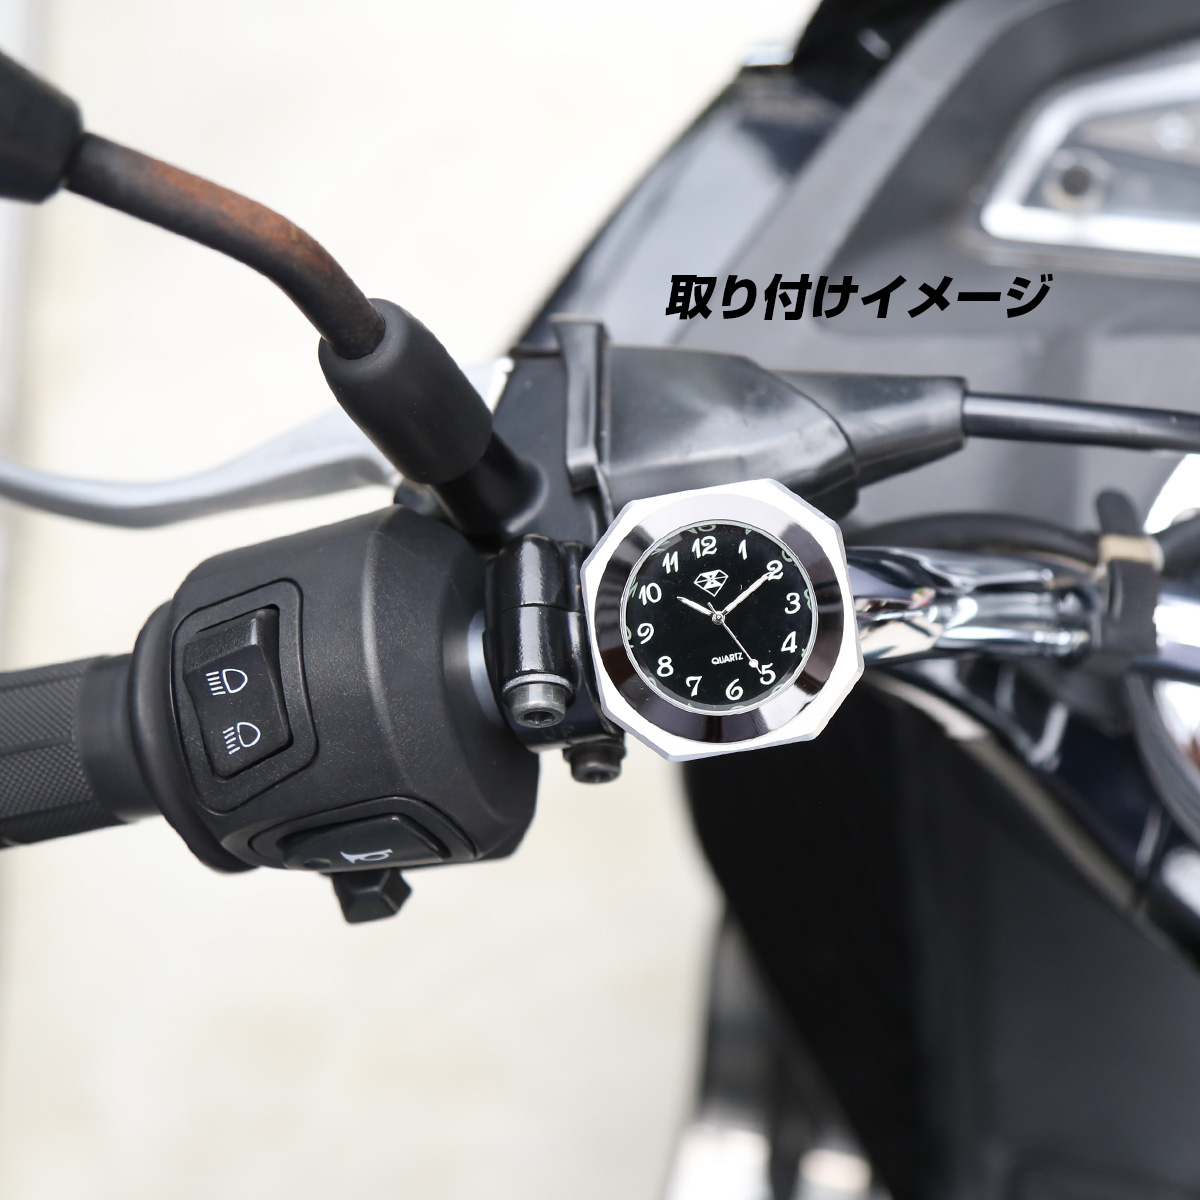 バイク用 アナログ時計 ハンドル取付ウォッチ IPX7防水 夜光 文字盤